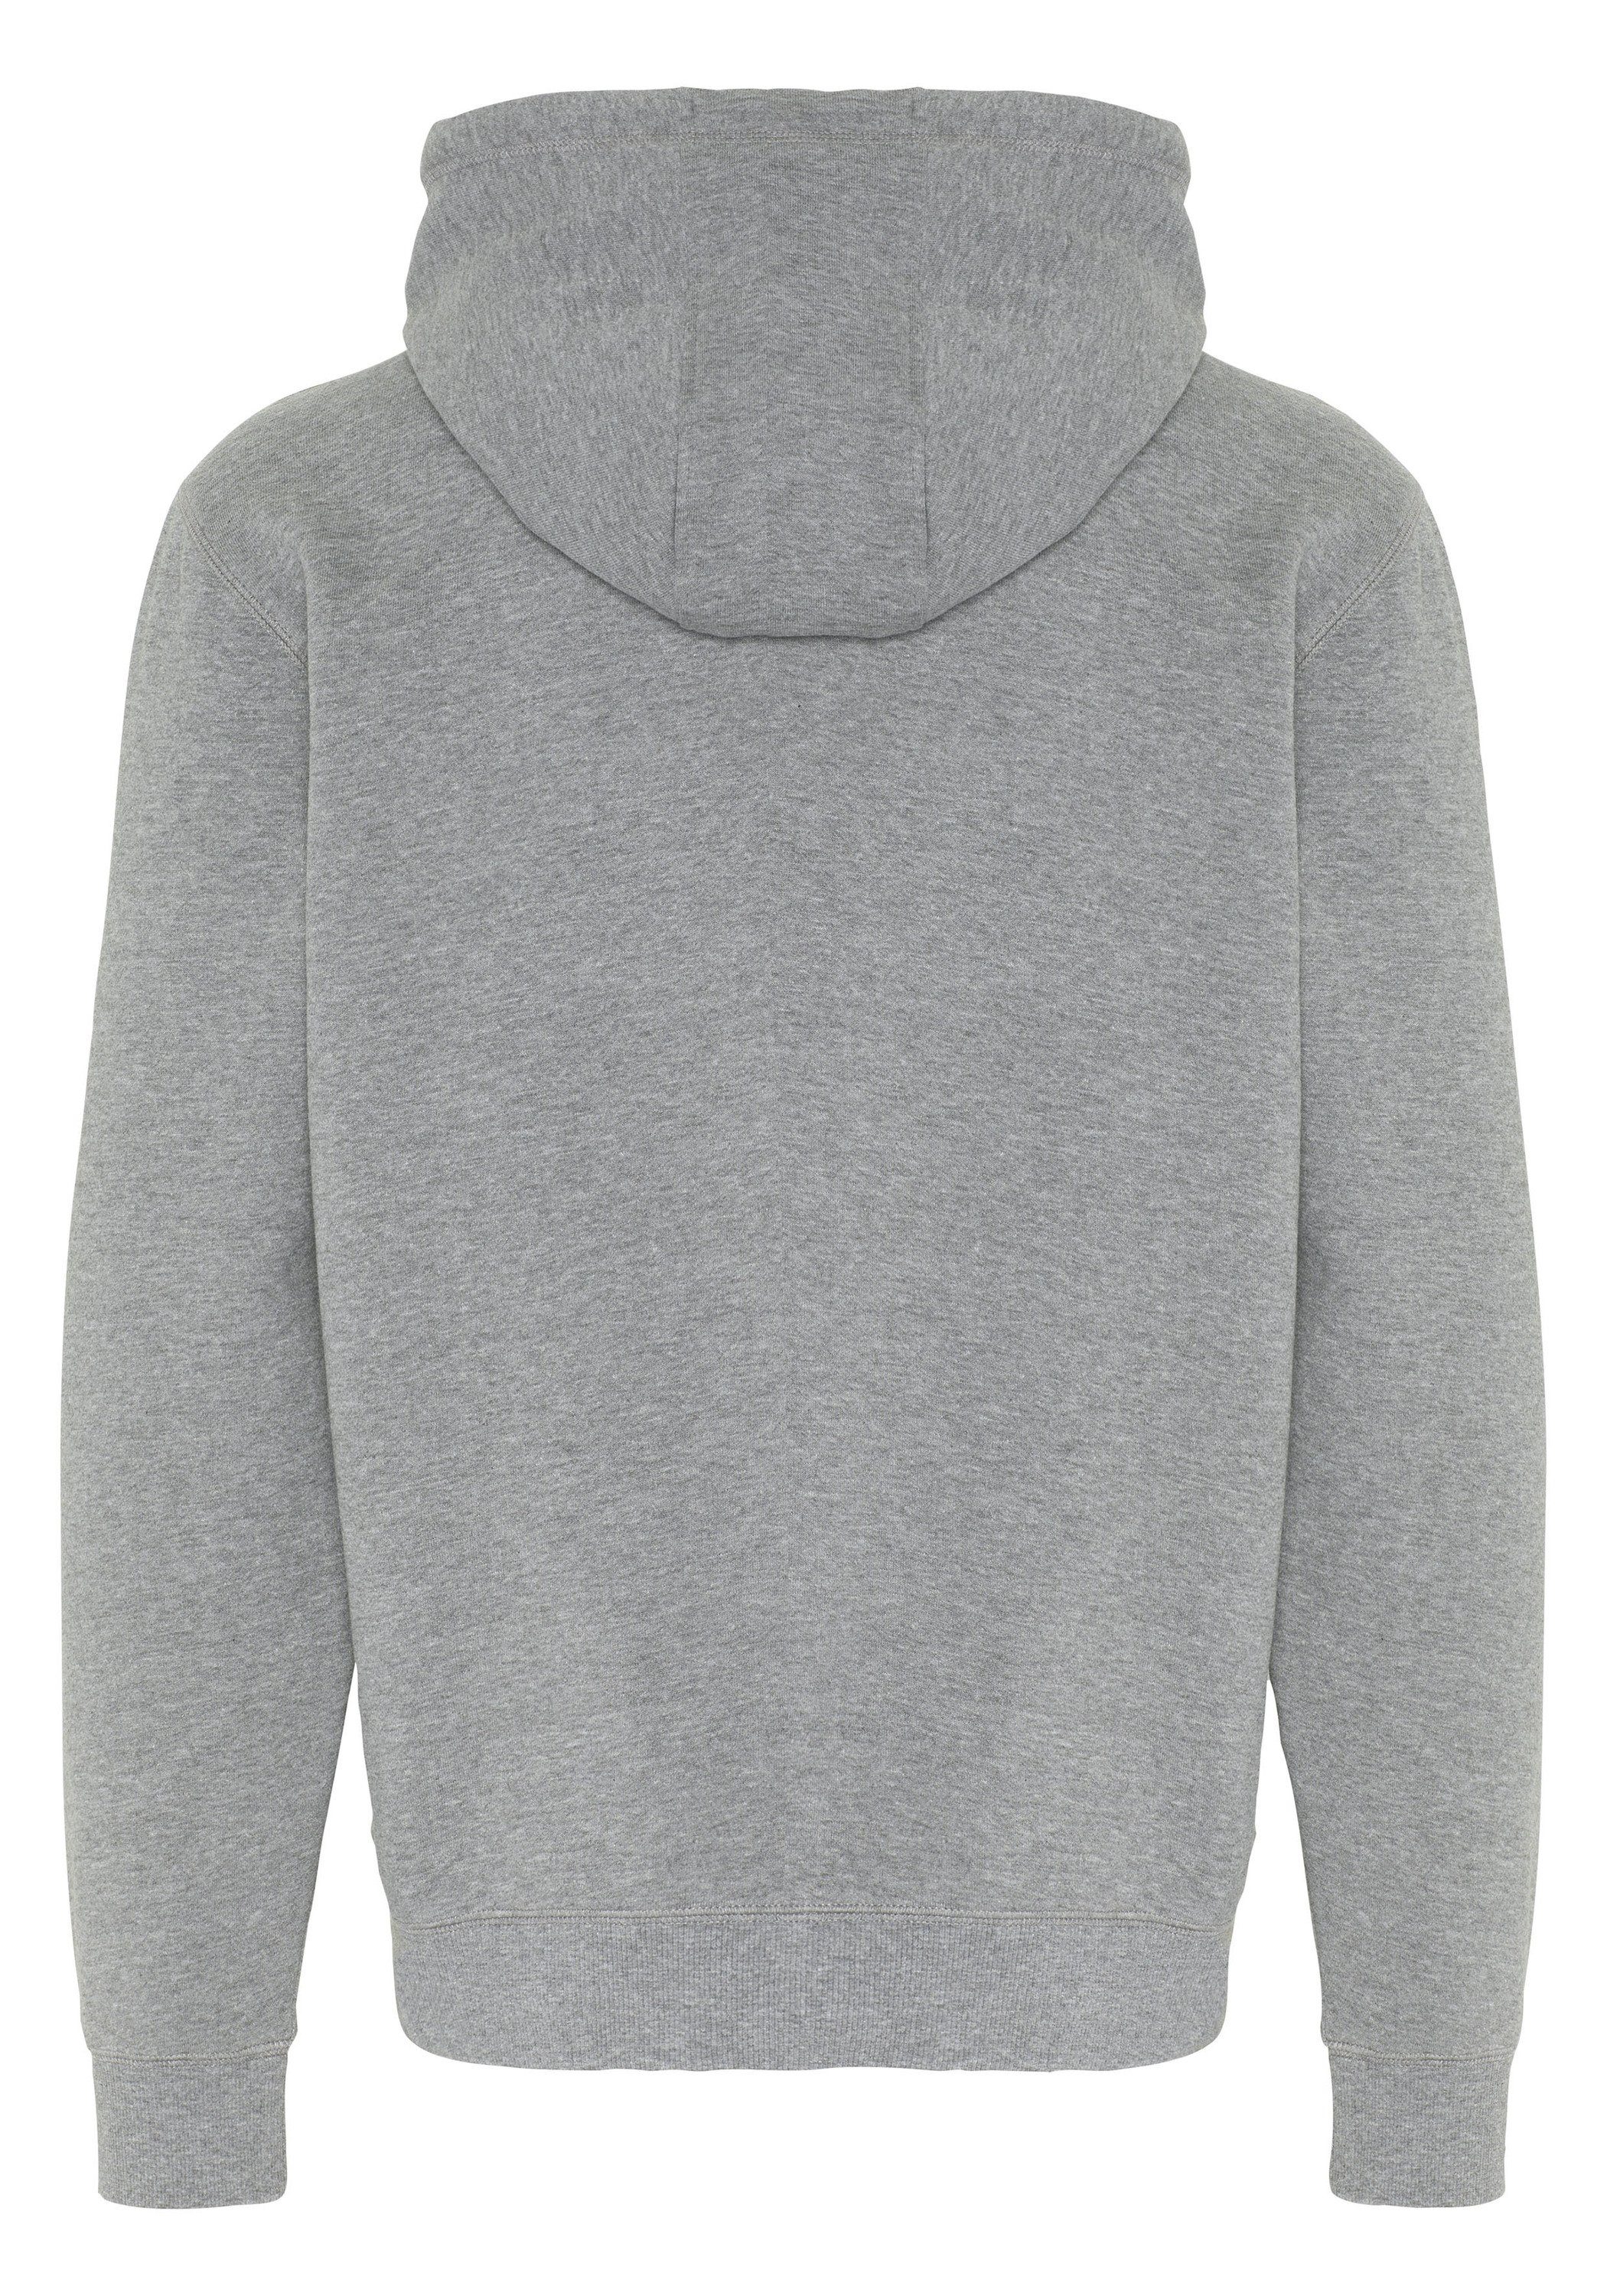 Chiemsee Baumwollmix Hoodie 1 mittel mit aus Kapuzensweatshirt grau respect-Print